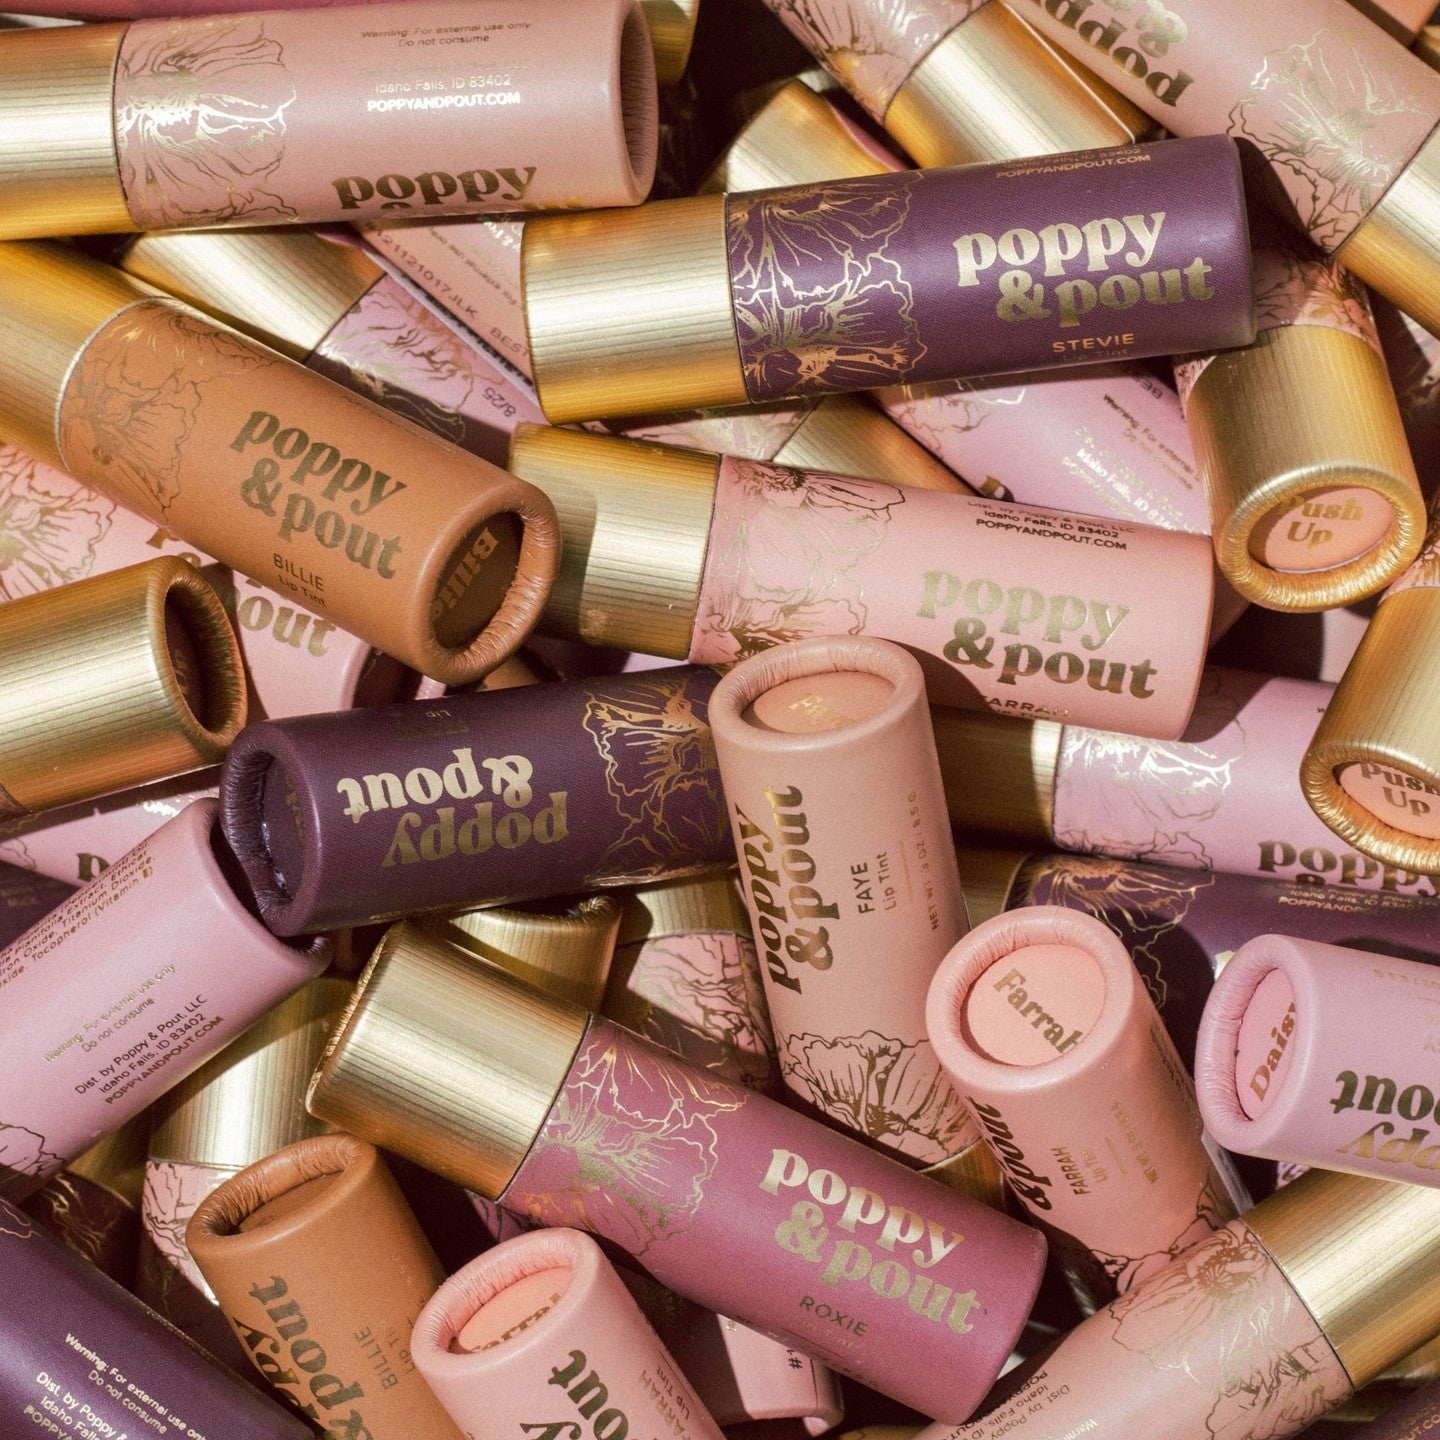 poppy and pout，2014年設立於美國愛達荷州的 Poppy and Pout,致力於創造出最天然又好聞的護唇產品。百花盛開護唇膏系列更是至今持續熱銷的商品，今天就跟著引香室一起感受它的美妙吧！